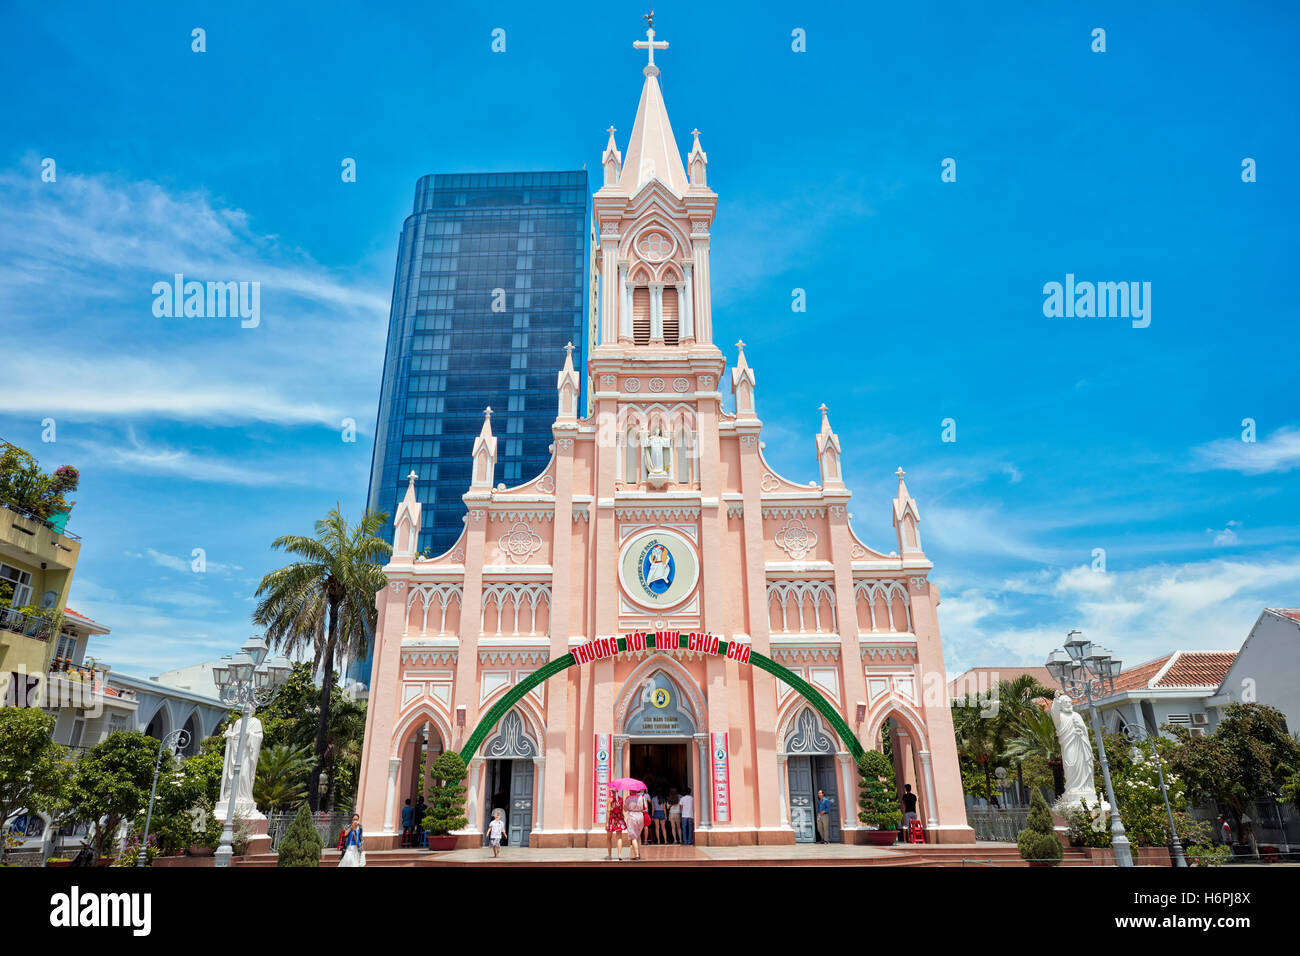 Façade de la cathédrale de Da Nang (Basilique du Sacré-Cœur de Jésus). Da nang, Vietnam. Banque D'Images